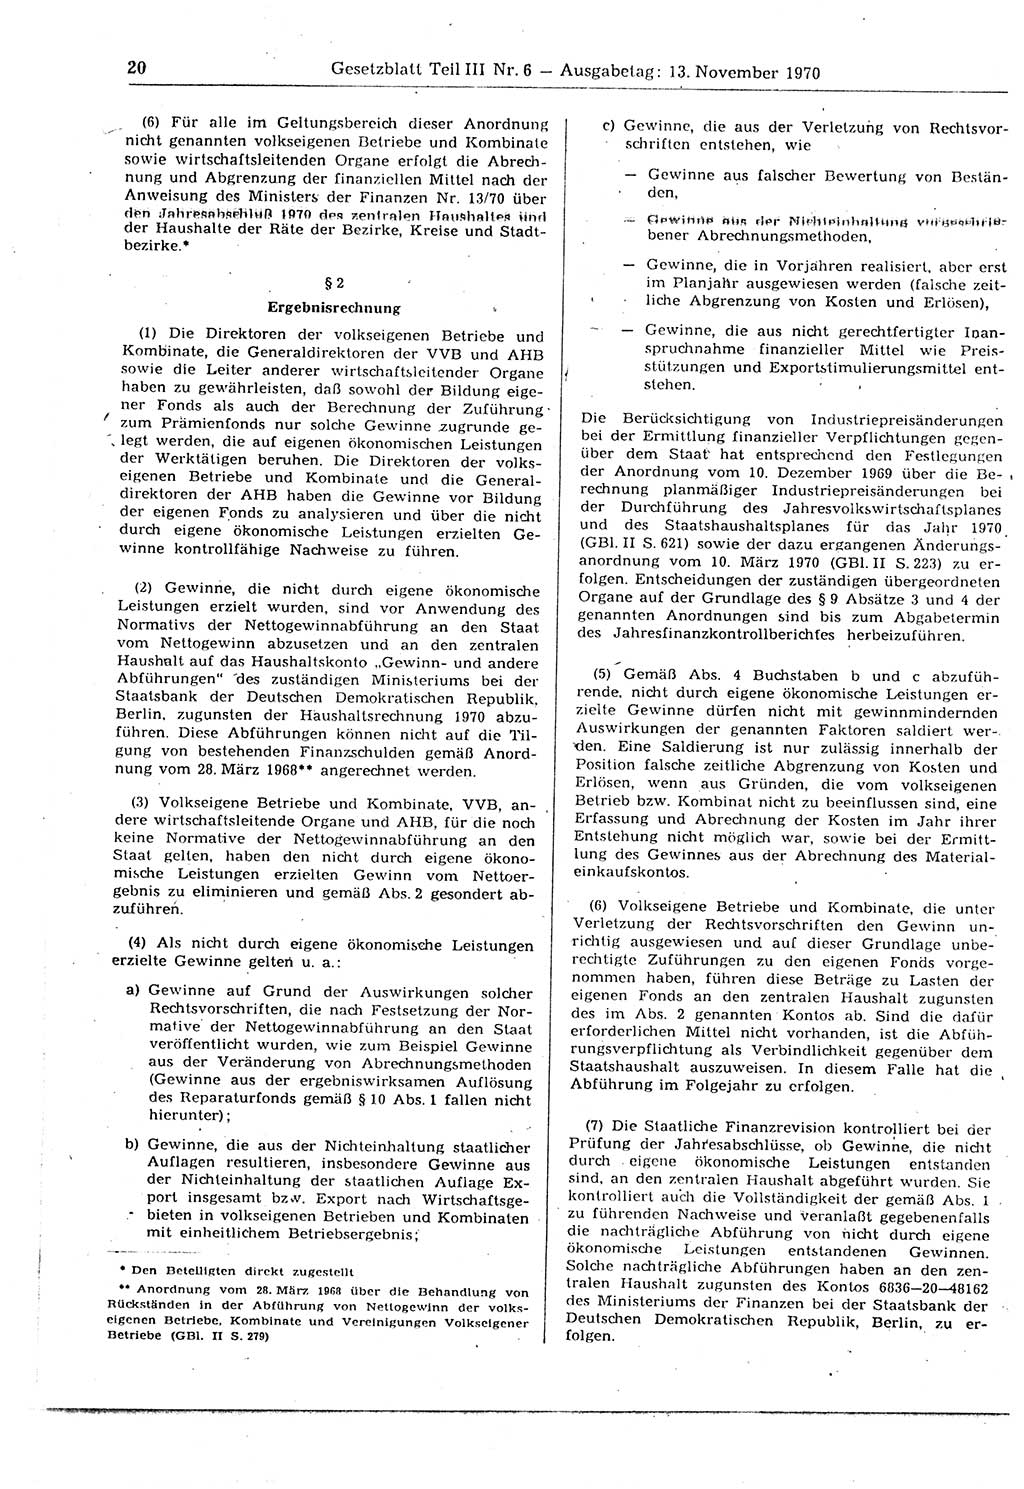 Gesetzblatt (GBl.) der Deutschen Demokratischen Republik (DDR) Teil ⅠⅠⅠ 1970, Seite 20 (GBl. DDR ⅠⅠⅠ 1970, S. 20)